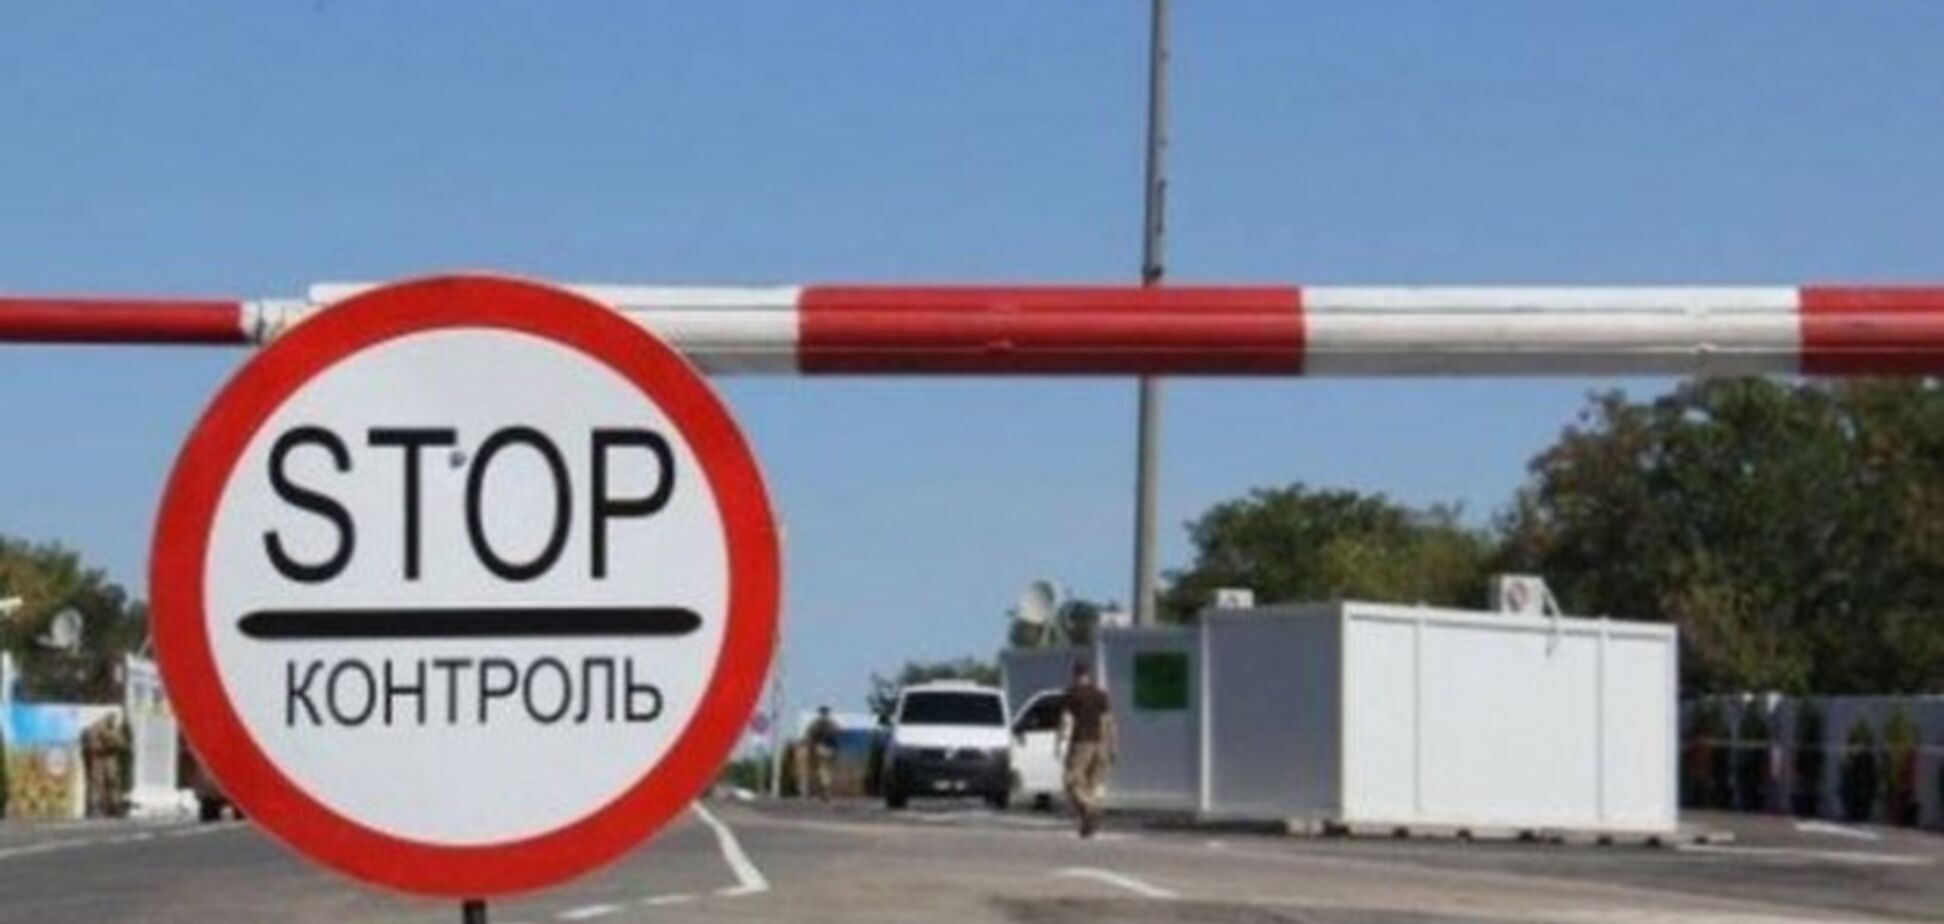 Михаил Лысенко: запрет на въезд в Днепр касается транзитного транспорта